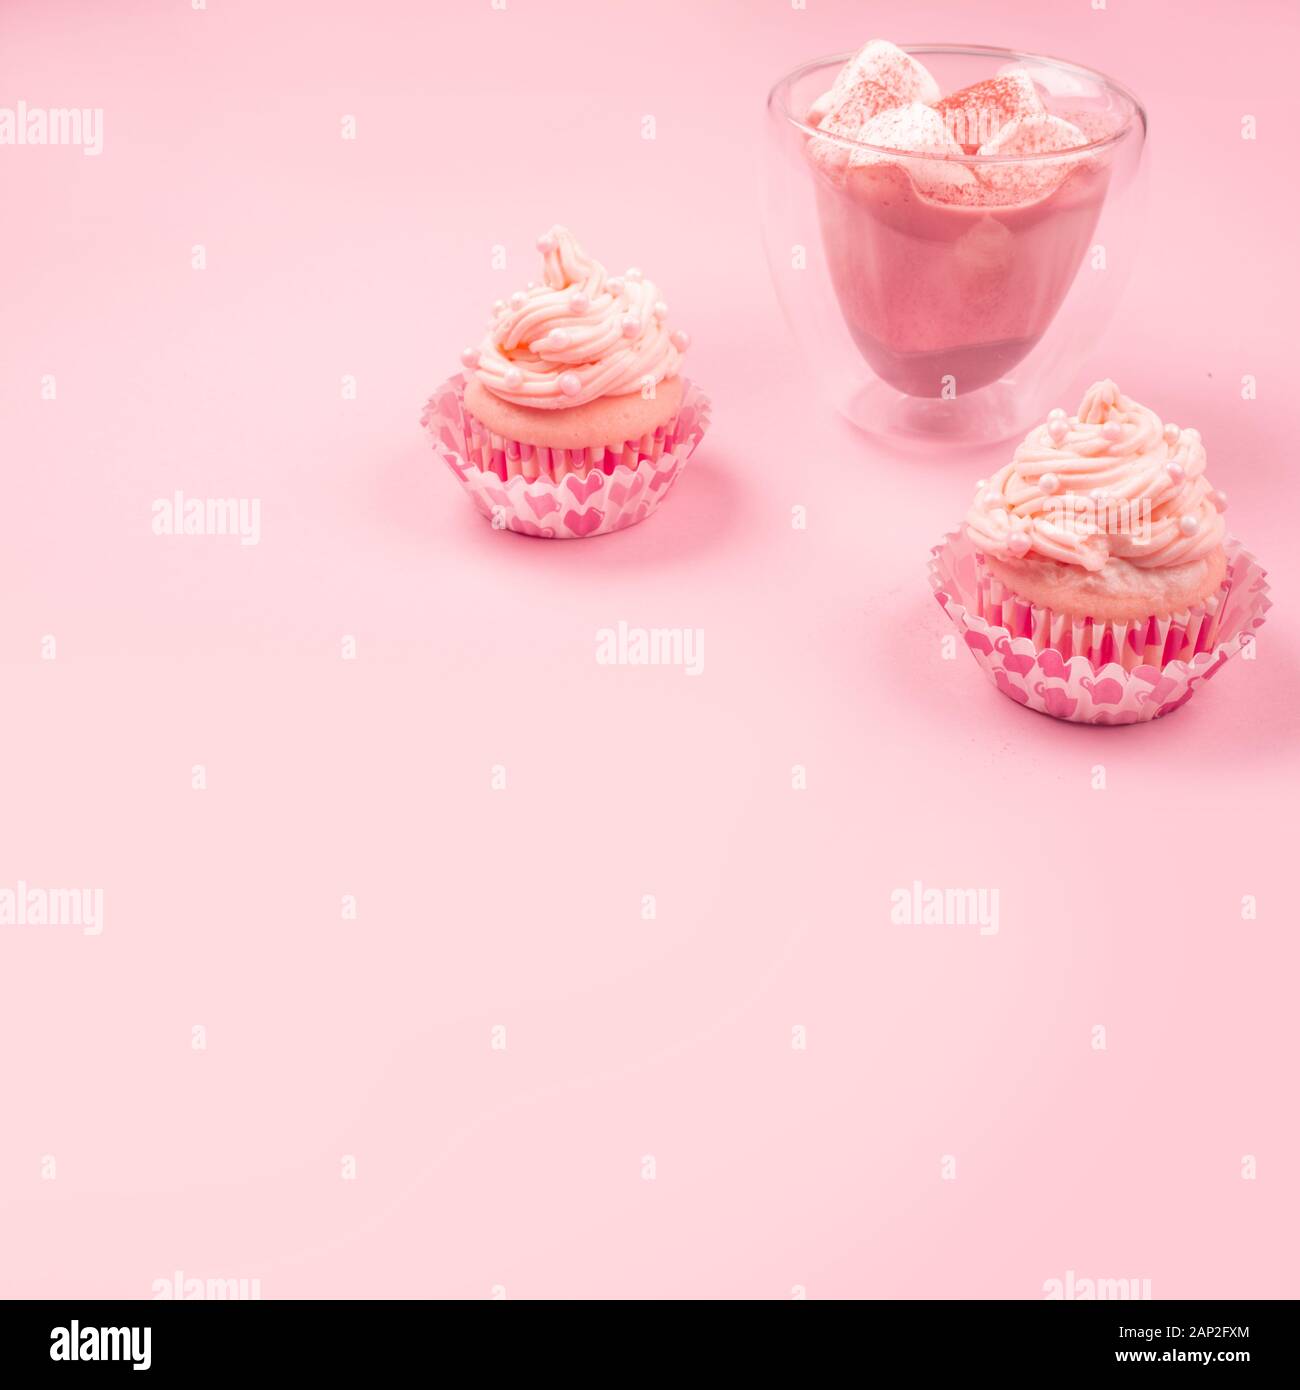 Amour saint valentin décoration cupcake à la crème et chocolat chaud sur fond rose avec copie espace pour le texte Banque D'Images